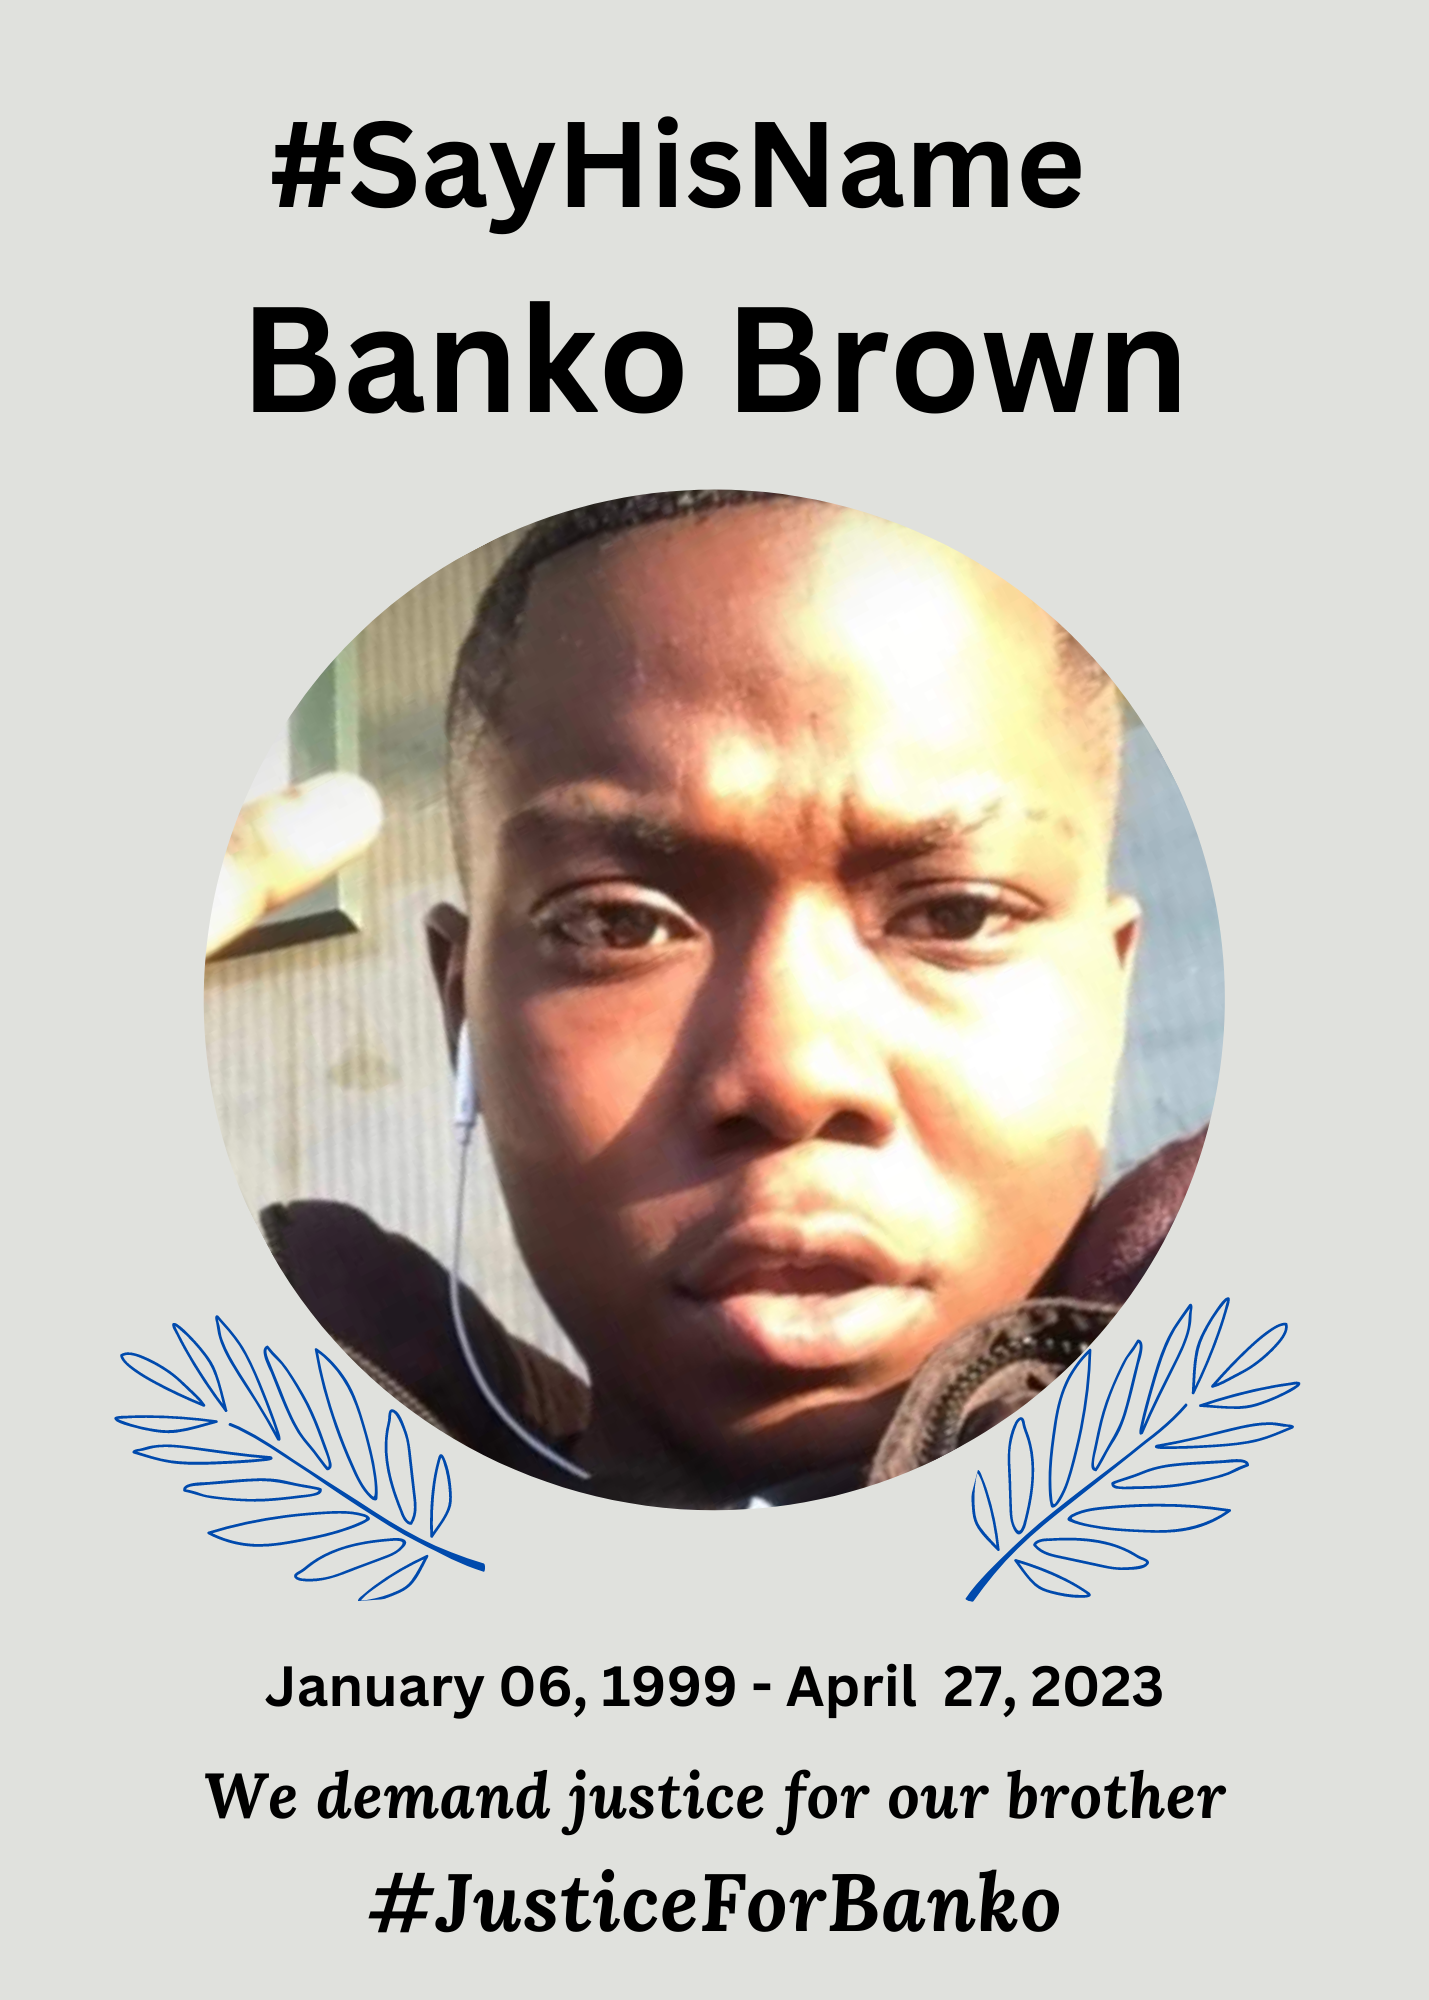 We will #SayHisName Banko Brown